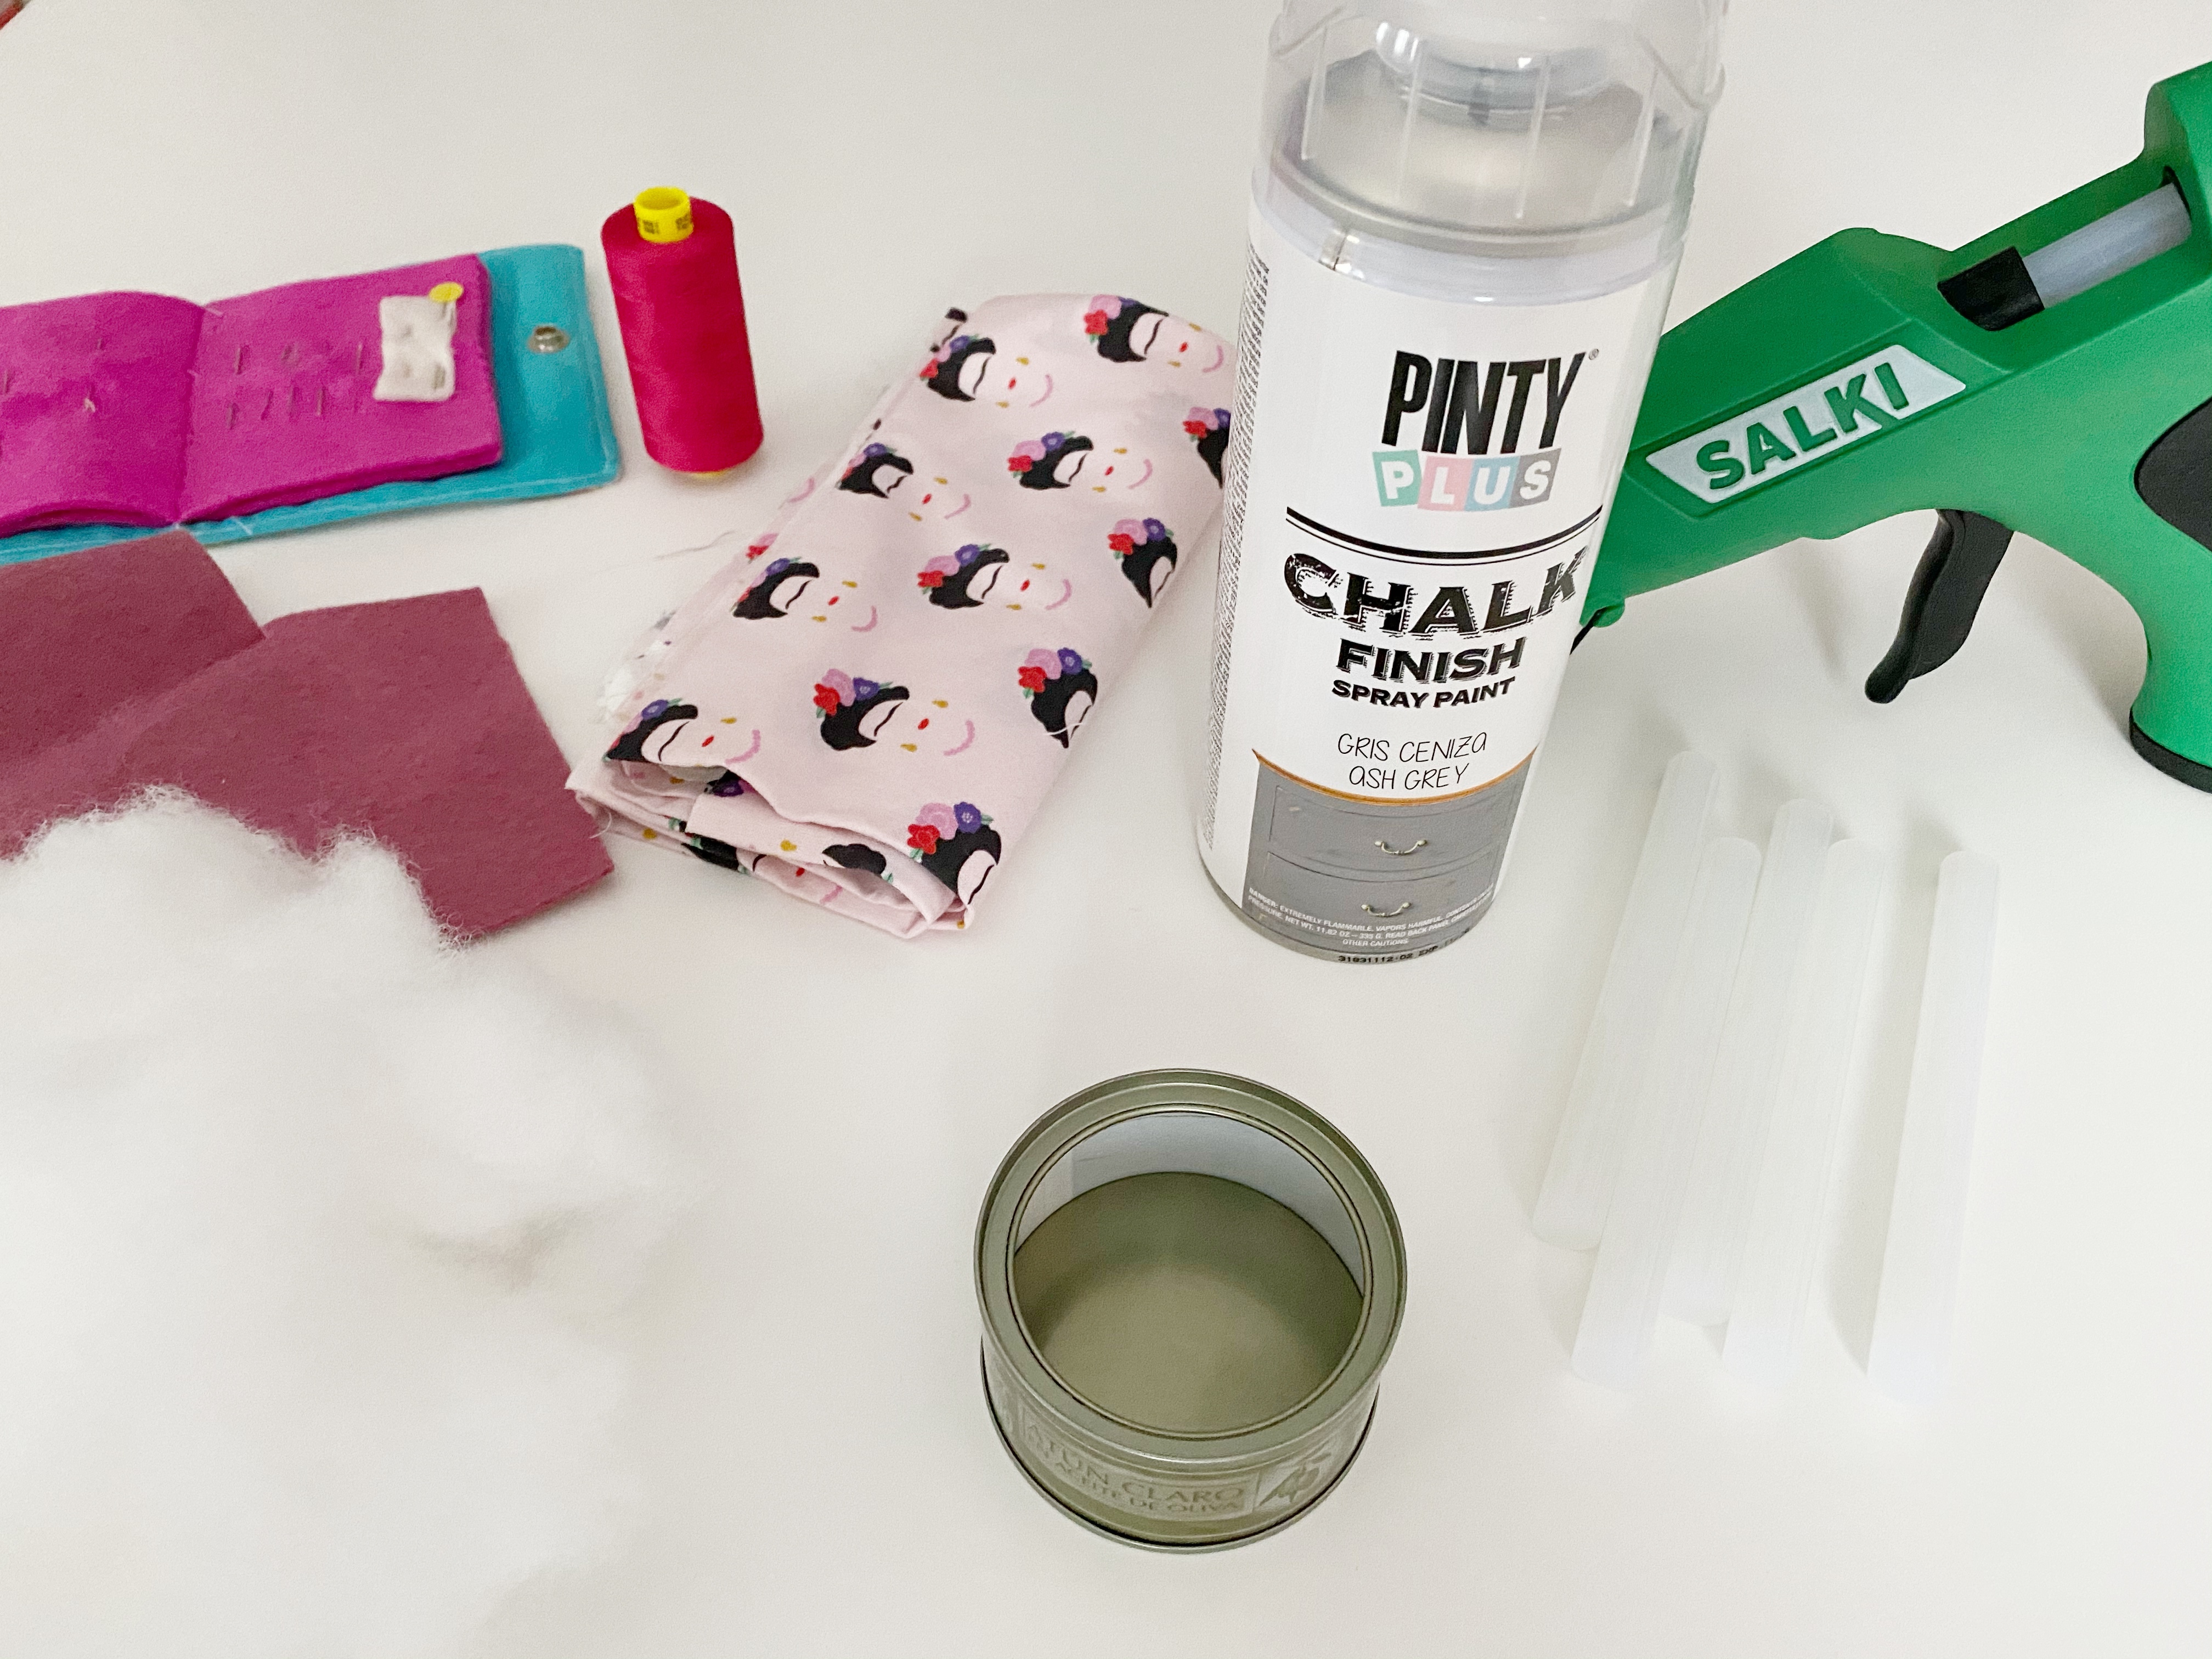 materiales necesarios para alfiletero casero y pintura en spray pintyplus